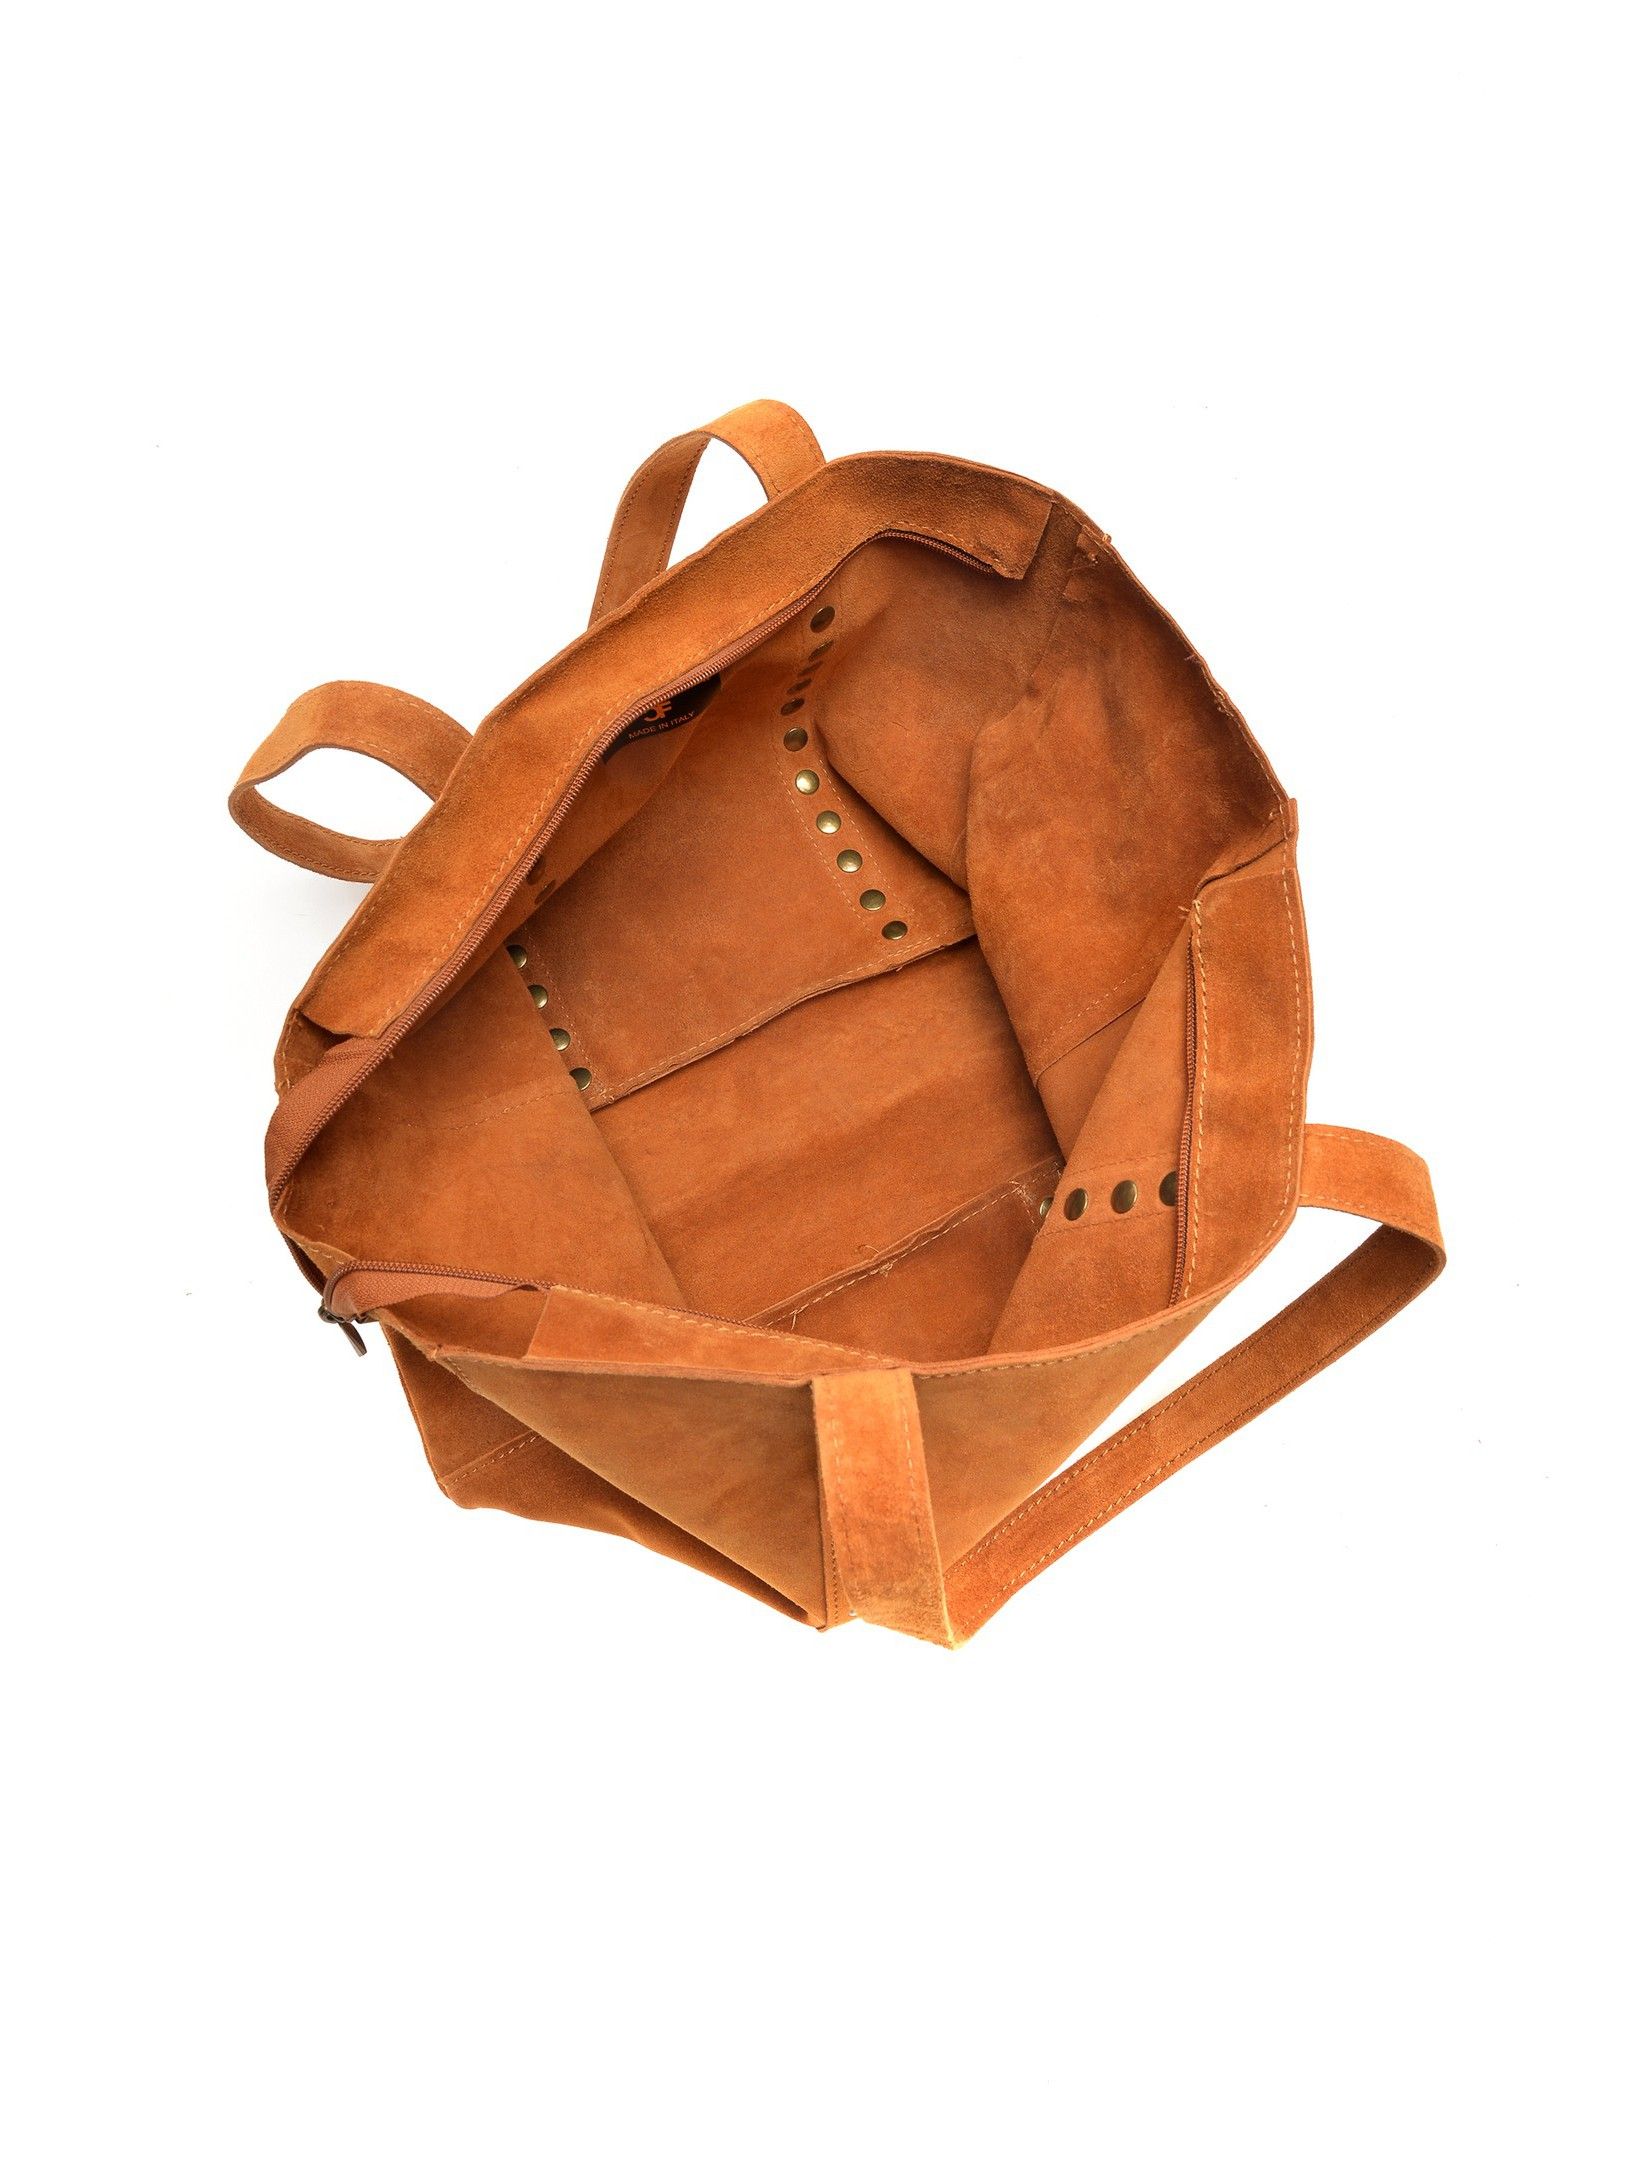 Top Handle Bag
100% cow leather
Top zip closure
Stud decoration
Dimensions(L):28x47x12 cm
Handle:56 cm
Shoulder strap:/ cm